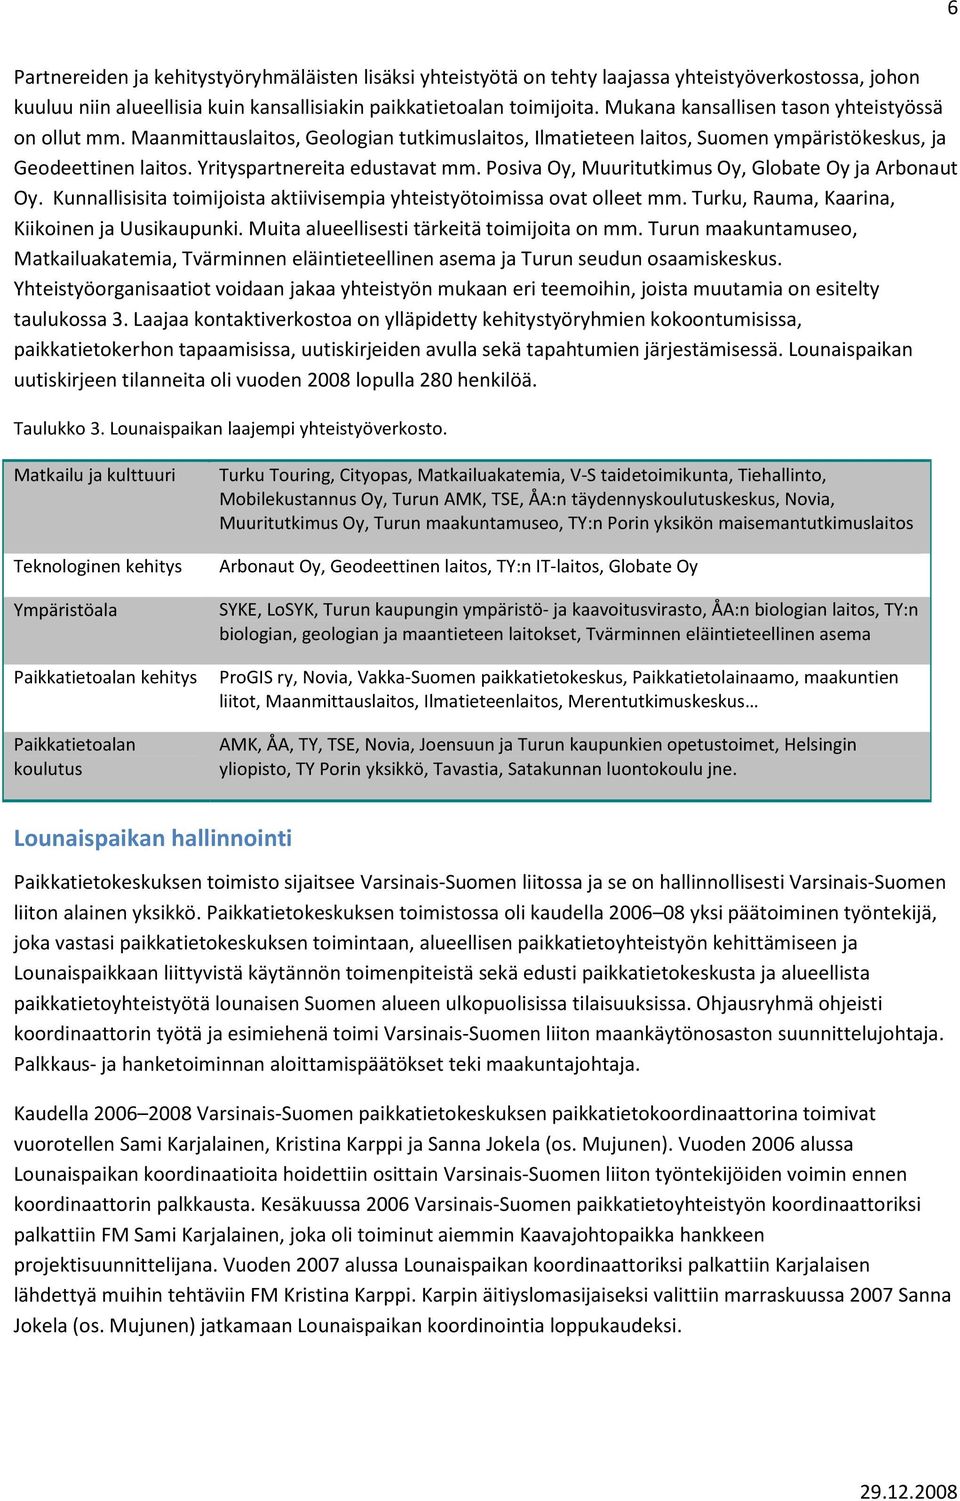 Posiva Oy, Muuritutkimus Oy, Globate Oy ja Arbonaut Oy. Kunnallisisita toimijoista aktiivisempia yhteistyötoimissa ovat olleet mm. Turku, Rauma, Kaarina, Kiikoinen ja Uusikaupunki.